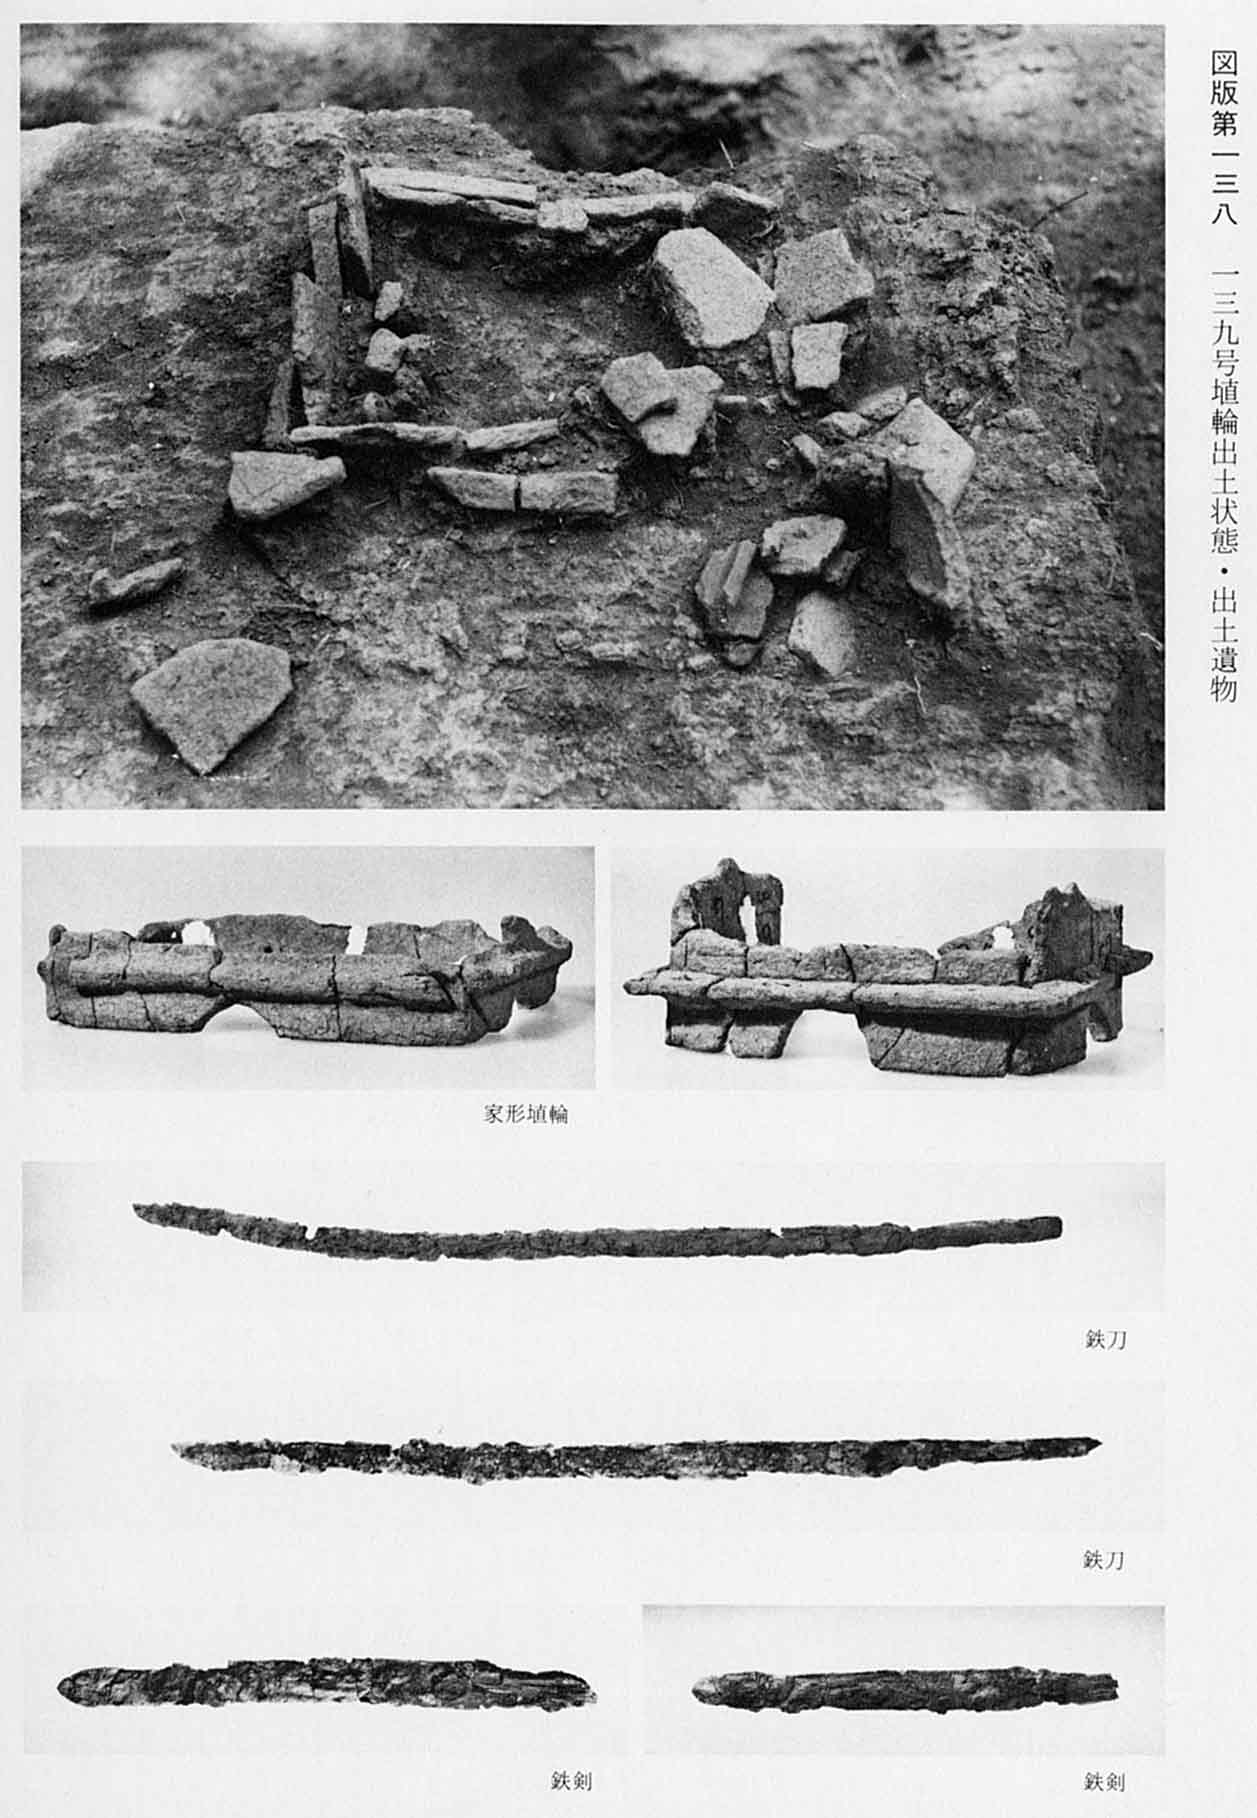 古墳時代の遺物が発掘された状態の写真と、埴輪や鉄の刀、鉄の剣がそれぞれ2枚づつ撮影された写真（図版138 139号埴輪出土状態・出土遺物）